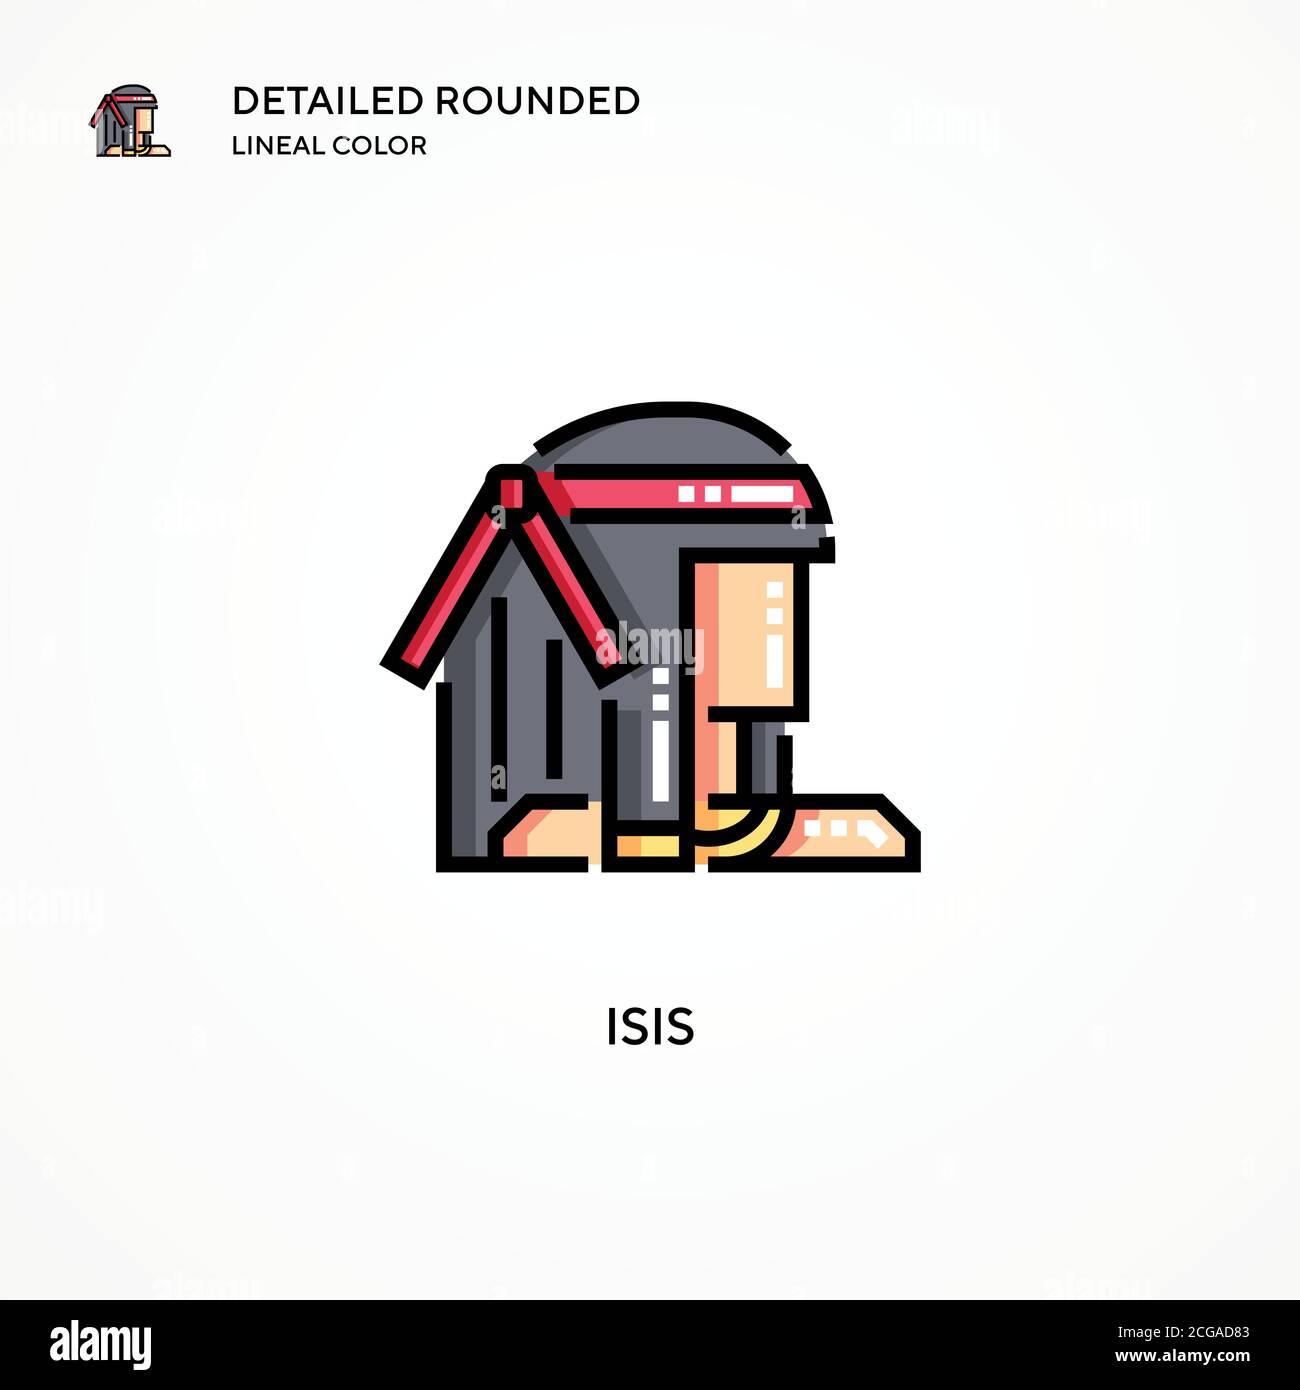 ISIS-Vektorsymbol. Moderne Vektorgrafik Konzepte. Einfach zu bearbeiten und anzupassen. Stock Vektor